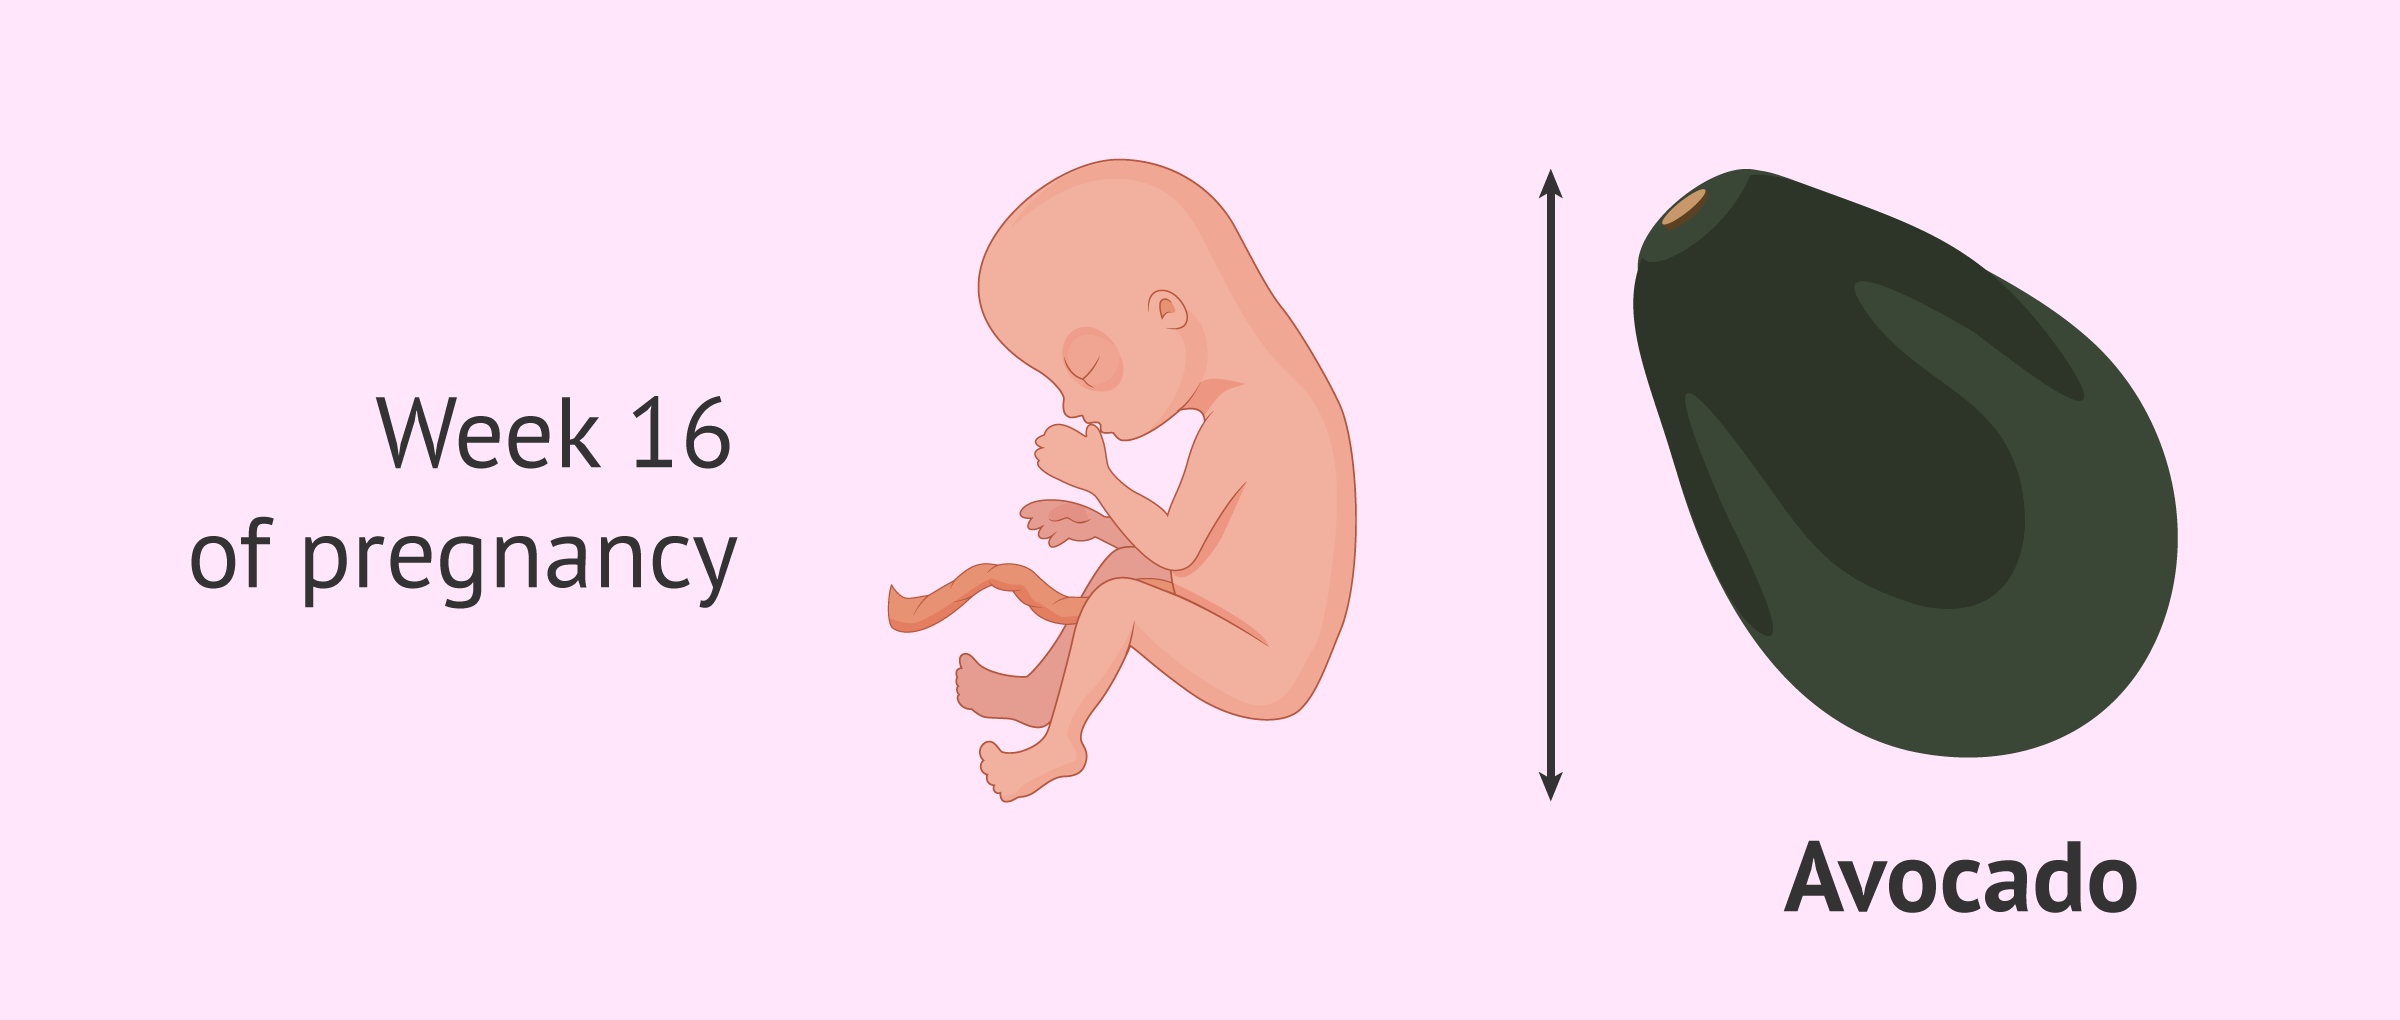 Fetus in the 16th week of pregnancy